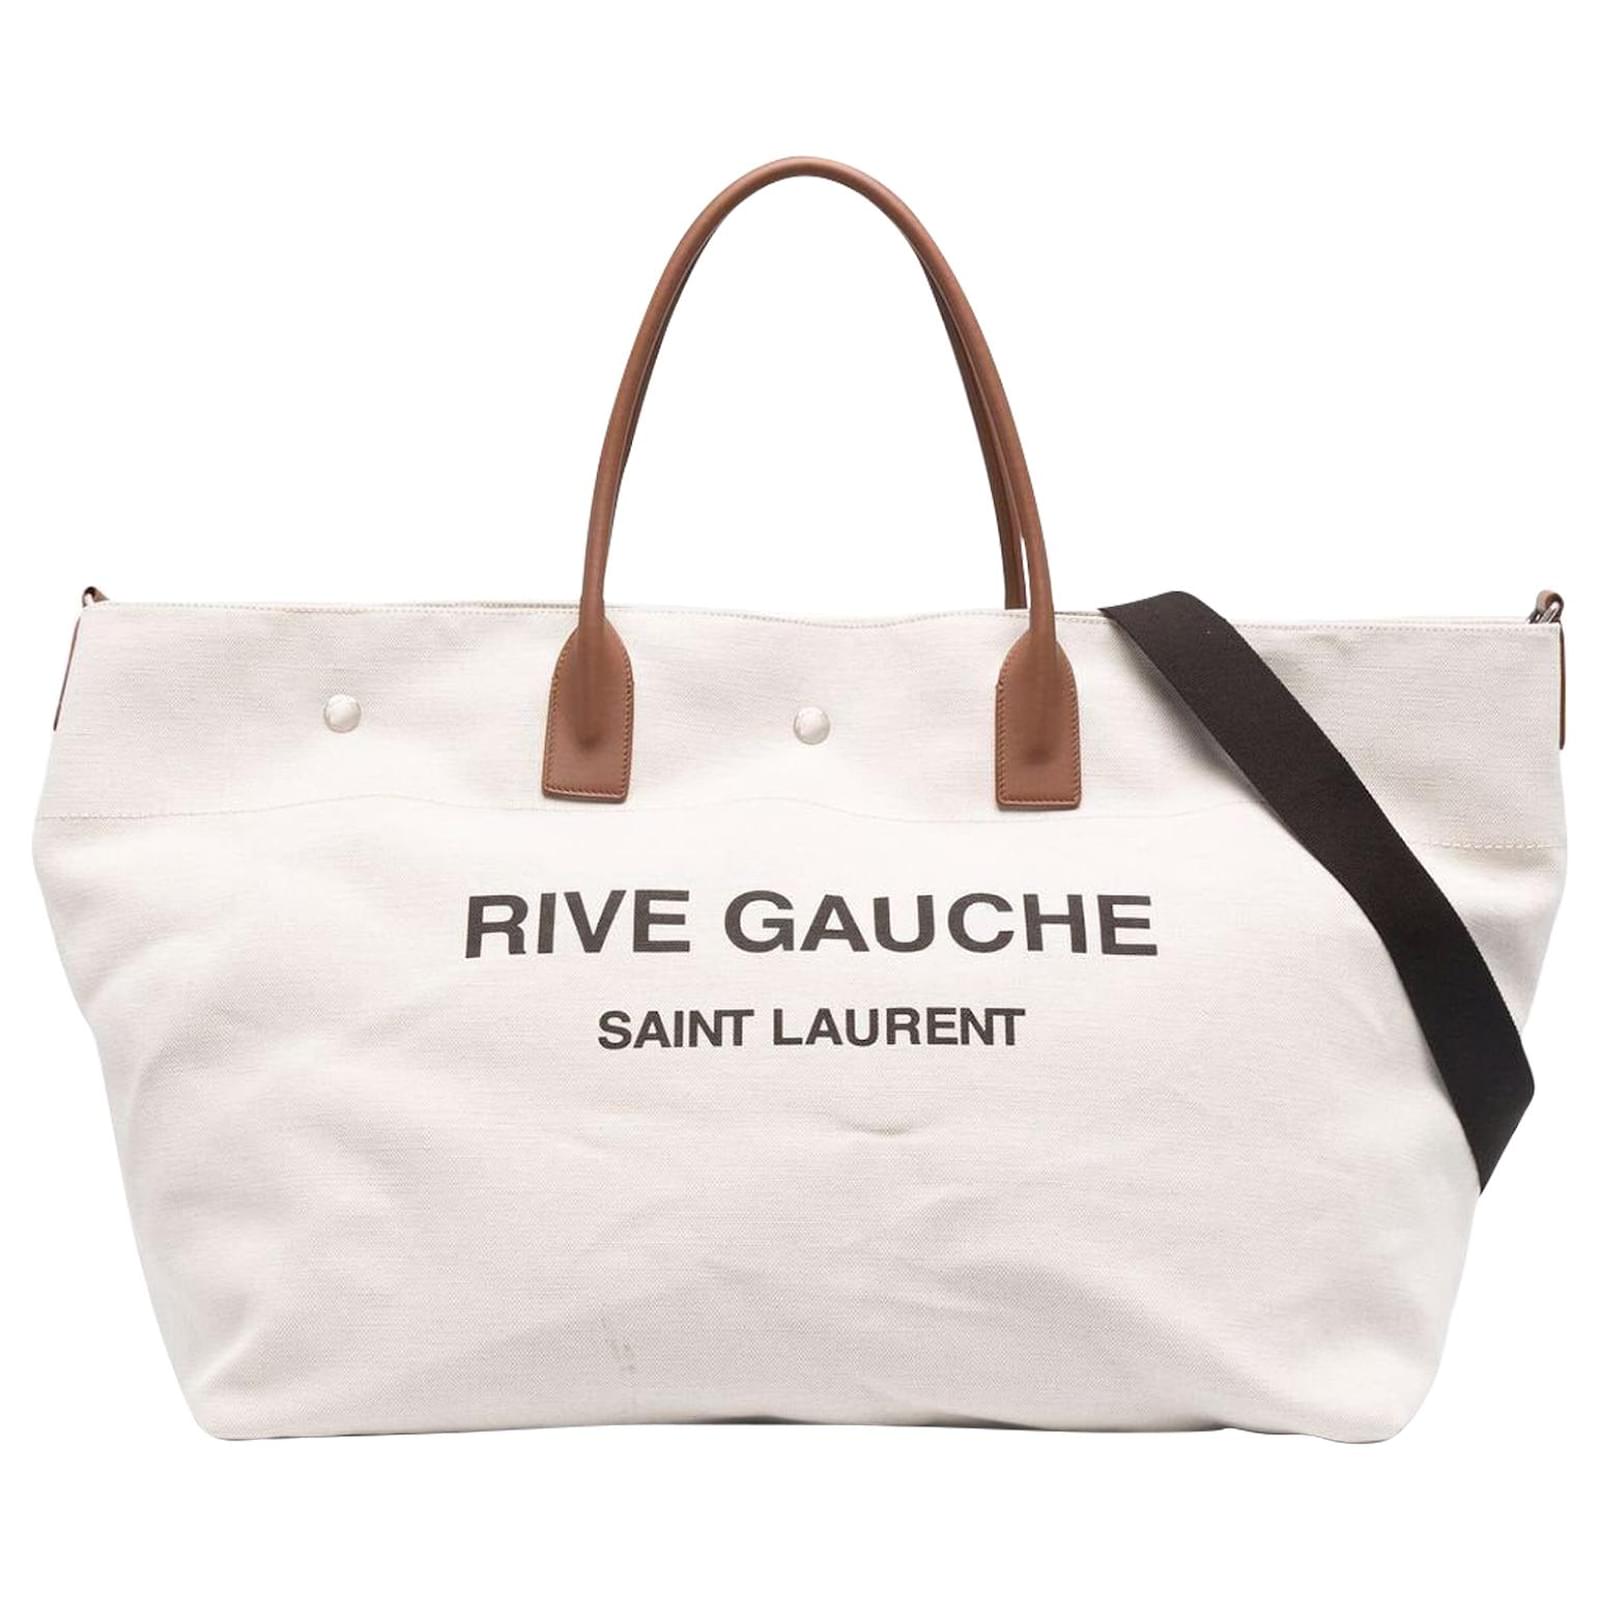 Saint Laurent Rive Gauche - Tote bag for Woman - Beige